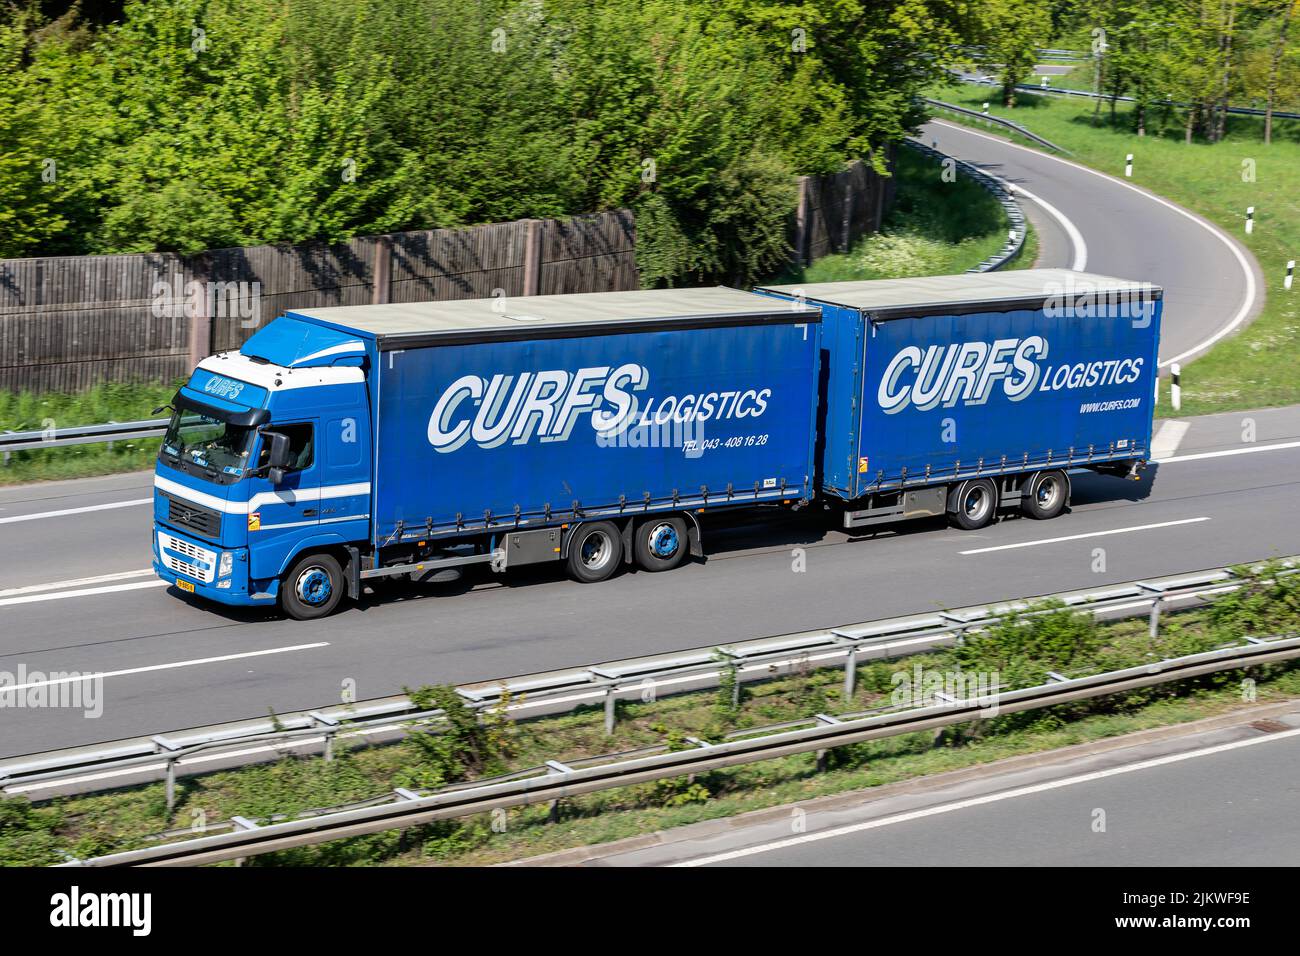 Curfs Logistics Camión combinado Volvo FH en autopista Foto de stock